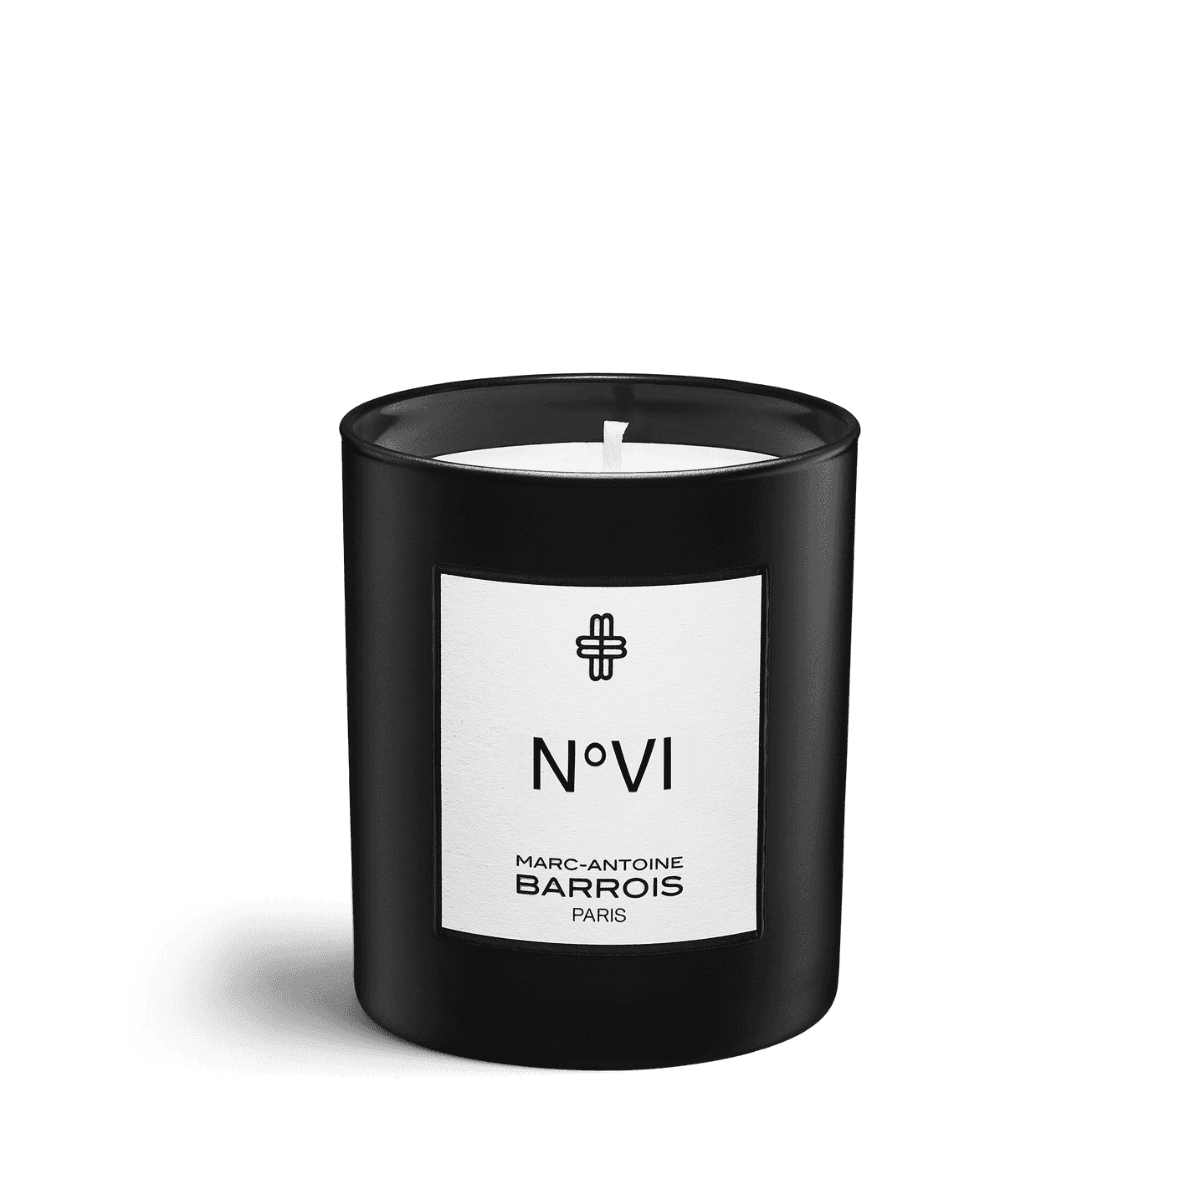 Afeelding van No6 scented candle 75 gram van het merk Marc-Antoine Barrois